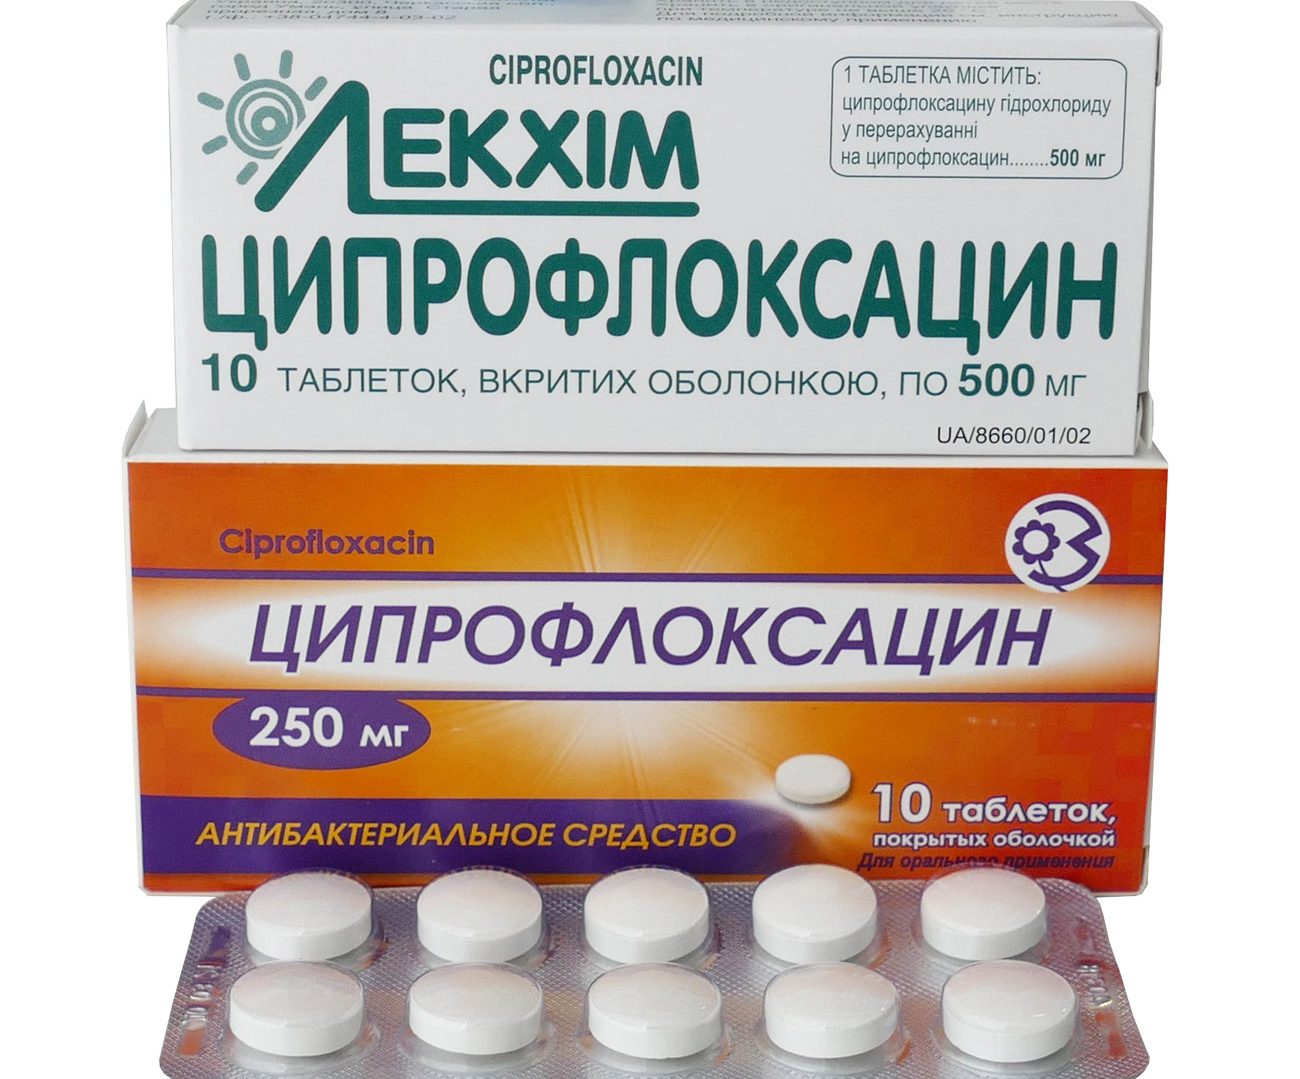 Ципрофлоксацин: инструкция по применению таблетки 500 мг, цена, от чего